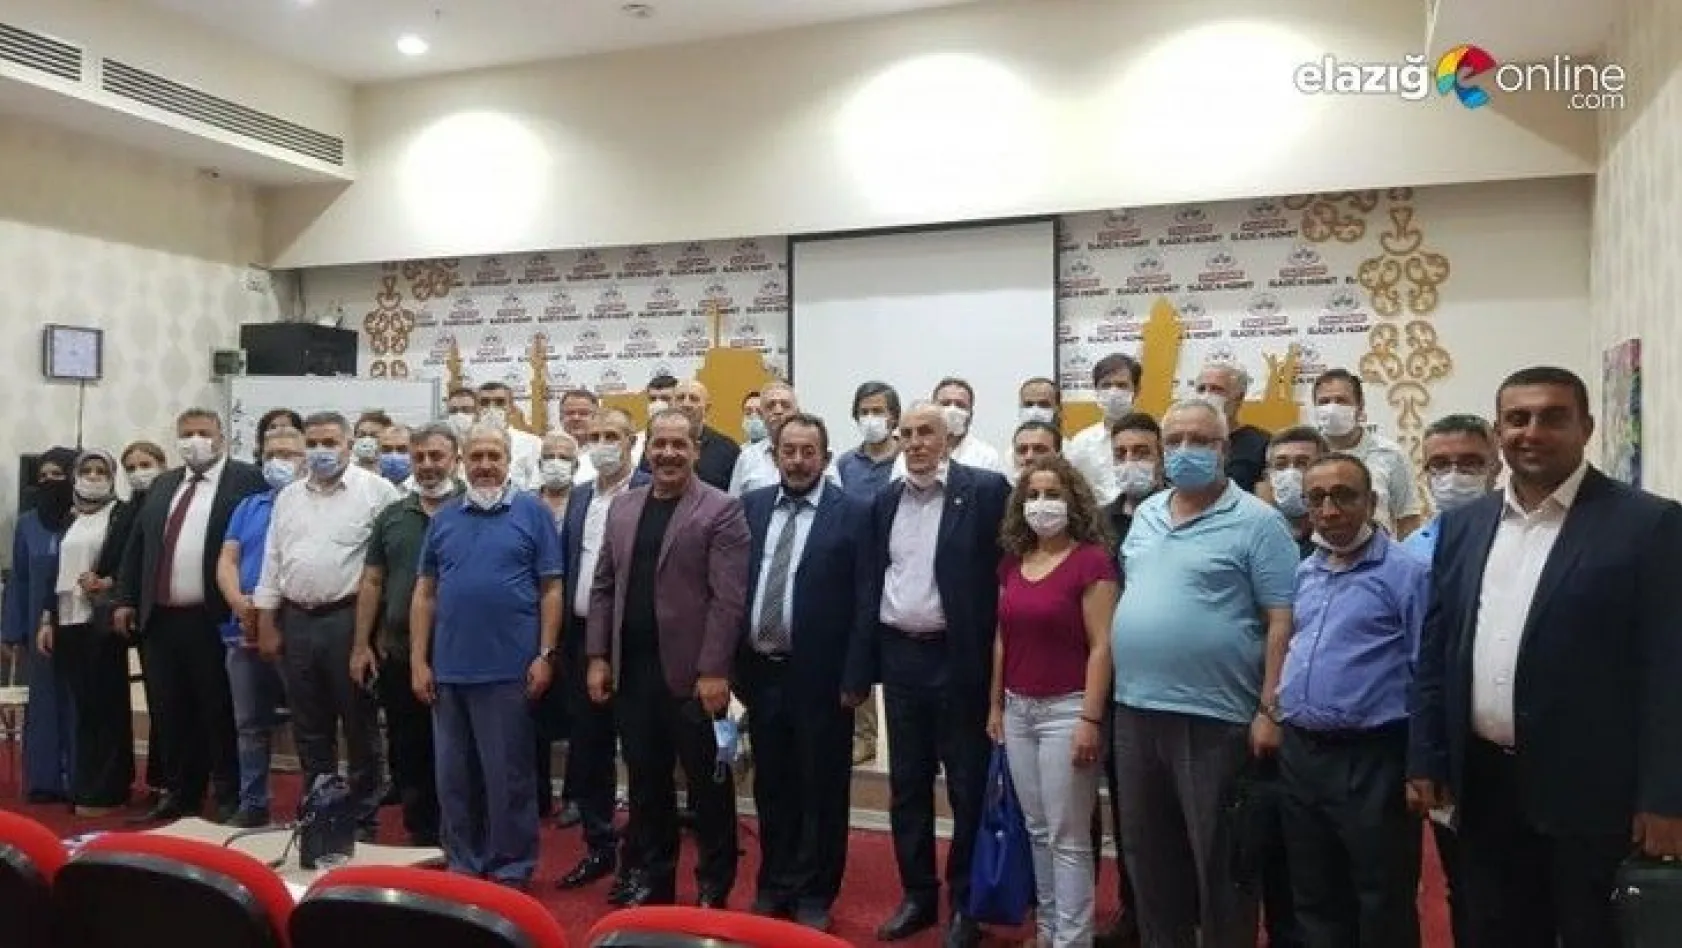 Elazığ Şehir Meclisi'nin Yeni Başkanı Mehmet Karaca Oldu